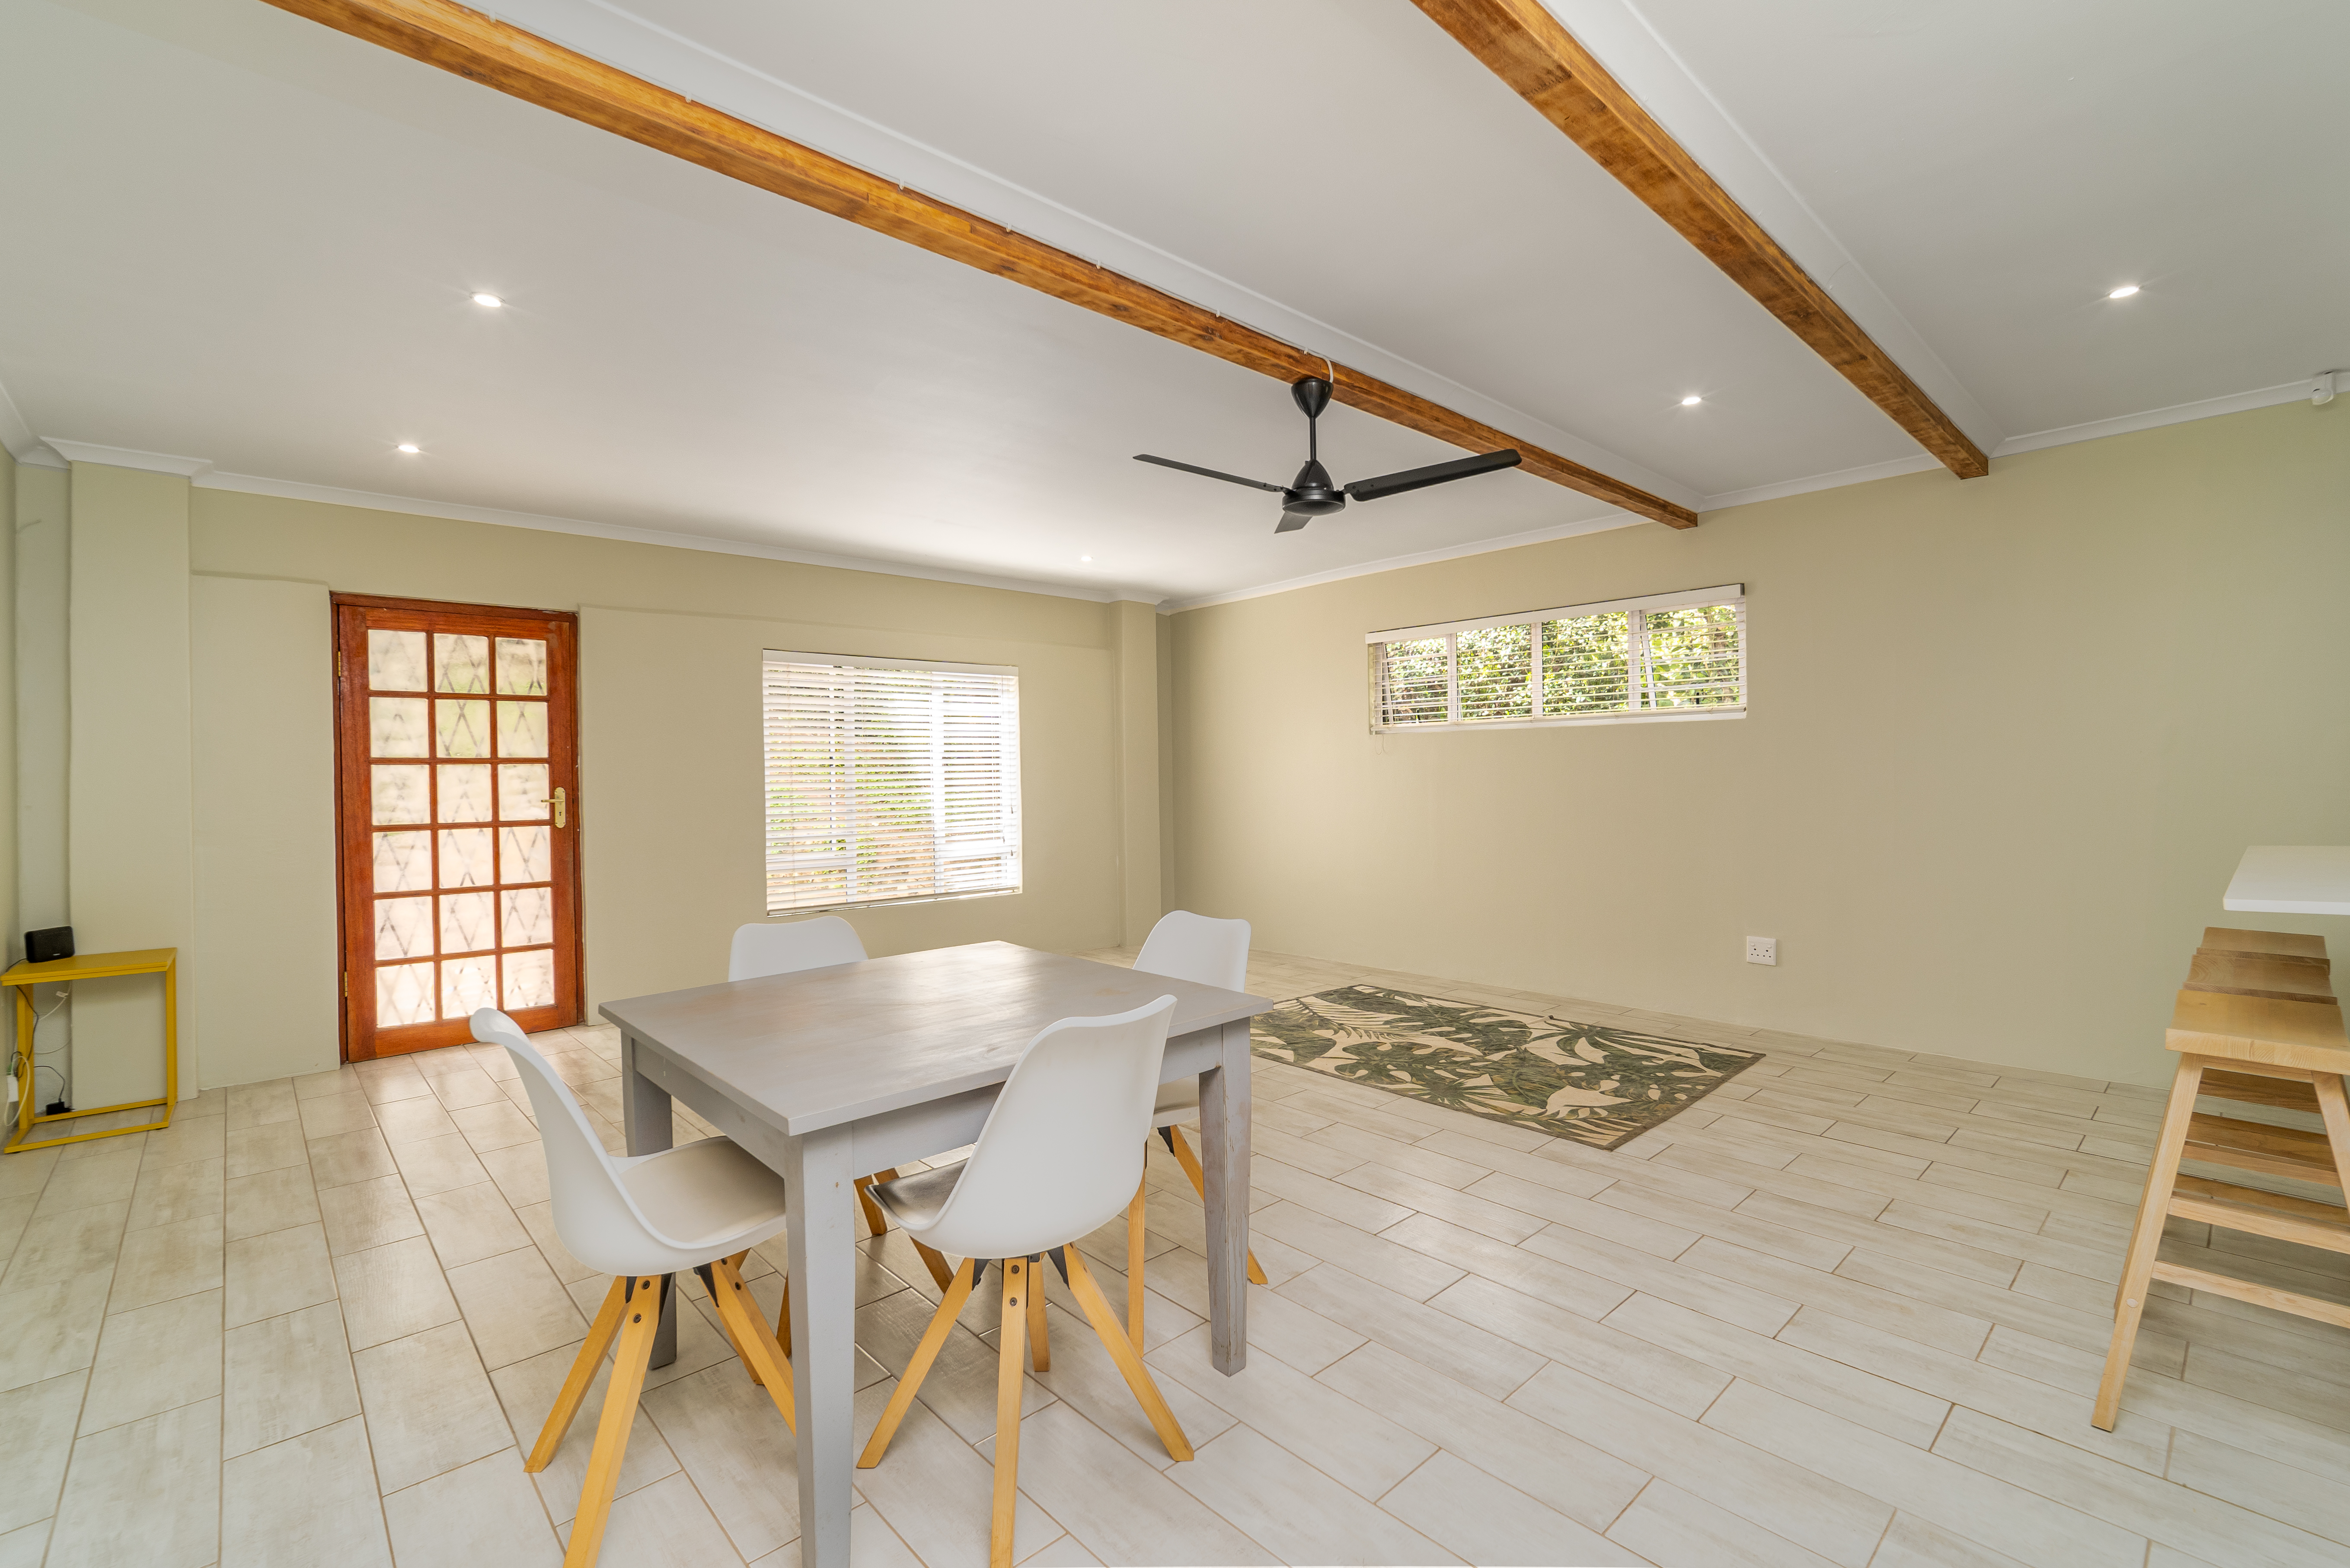 5 Bedroom Property for Sale in Hillcrest Central KwaZulu-Natal